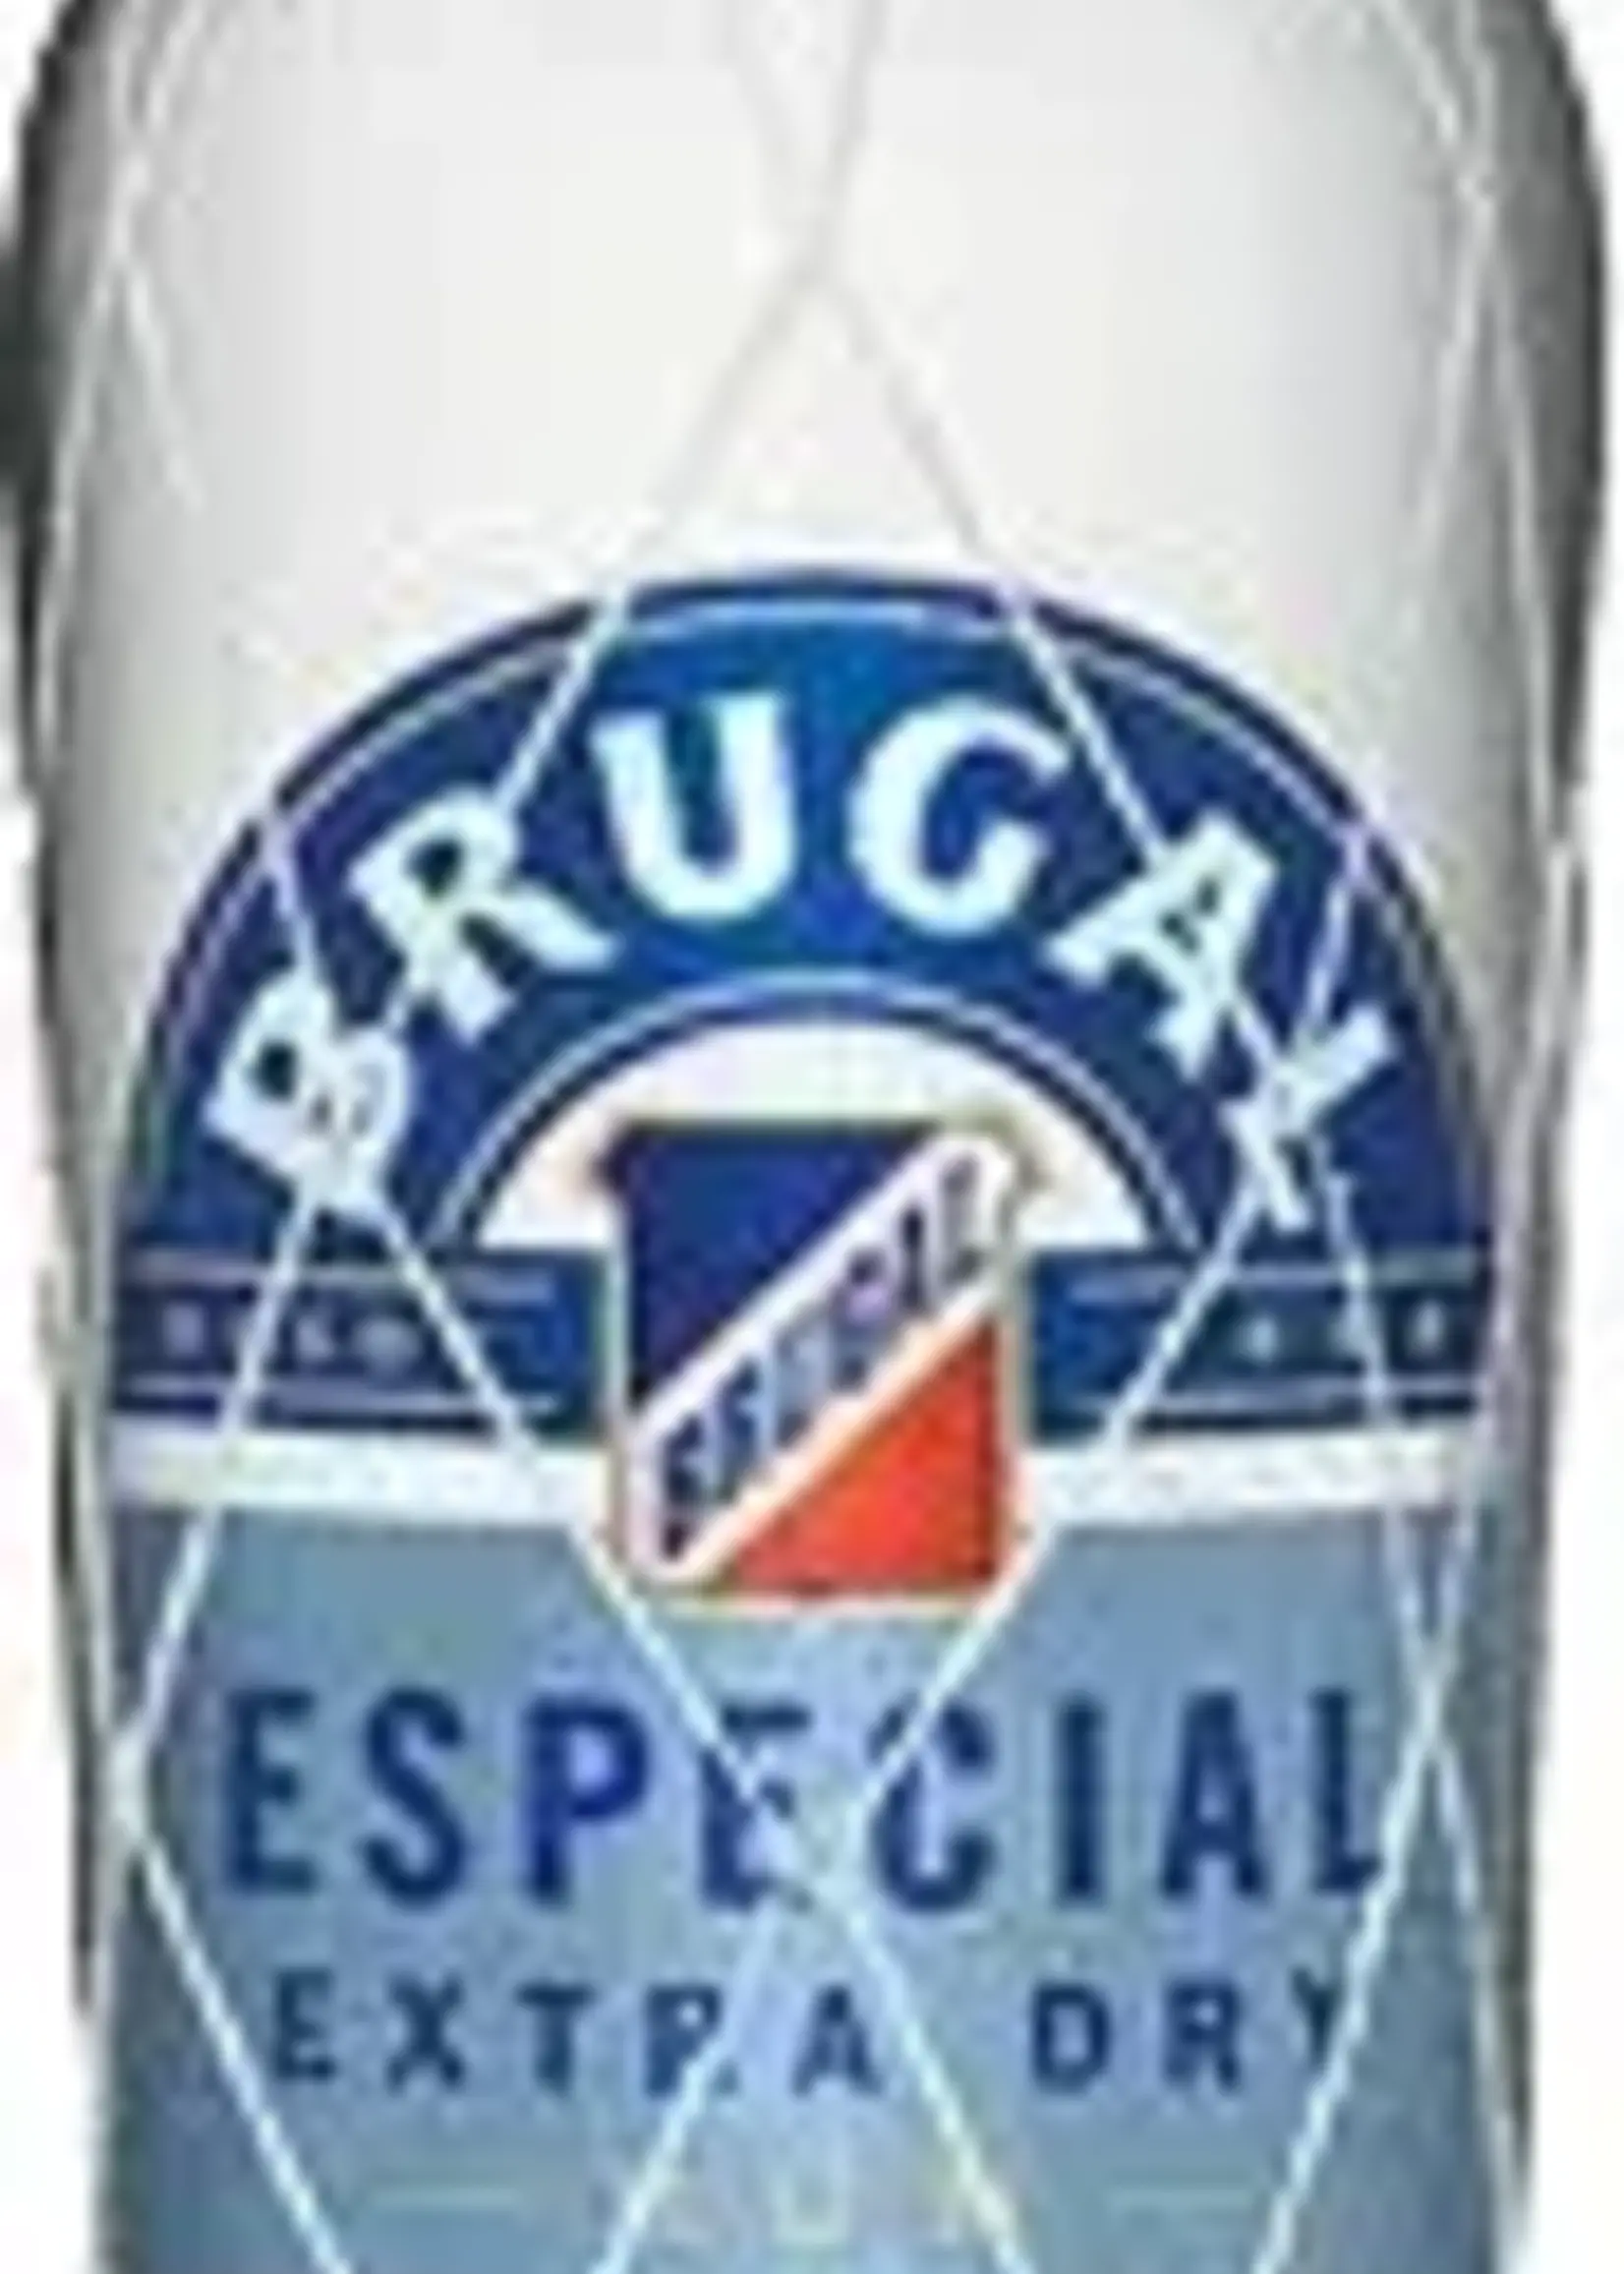 rum Brugal Especial Extra Dry Rum 1L